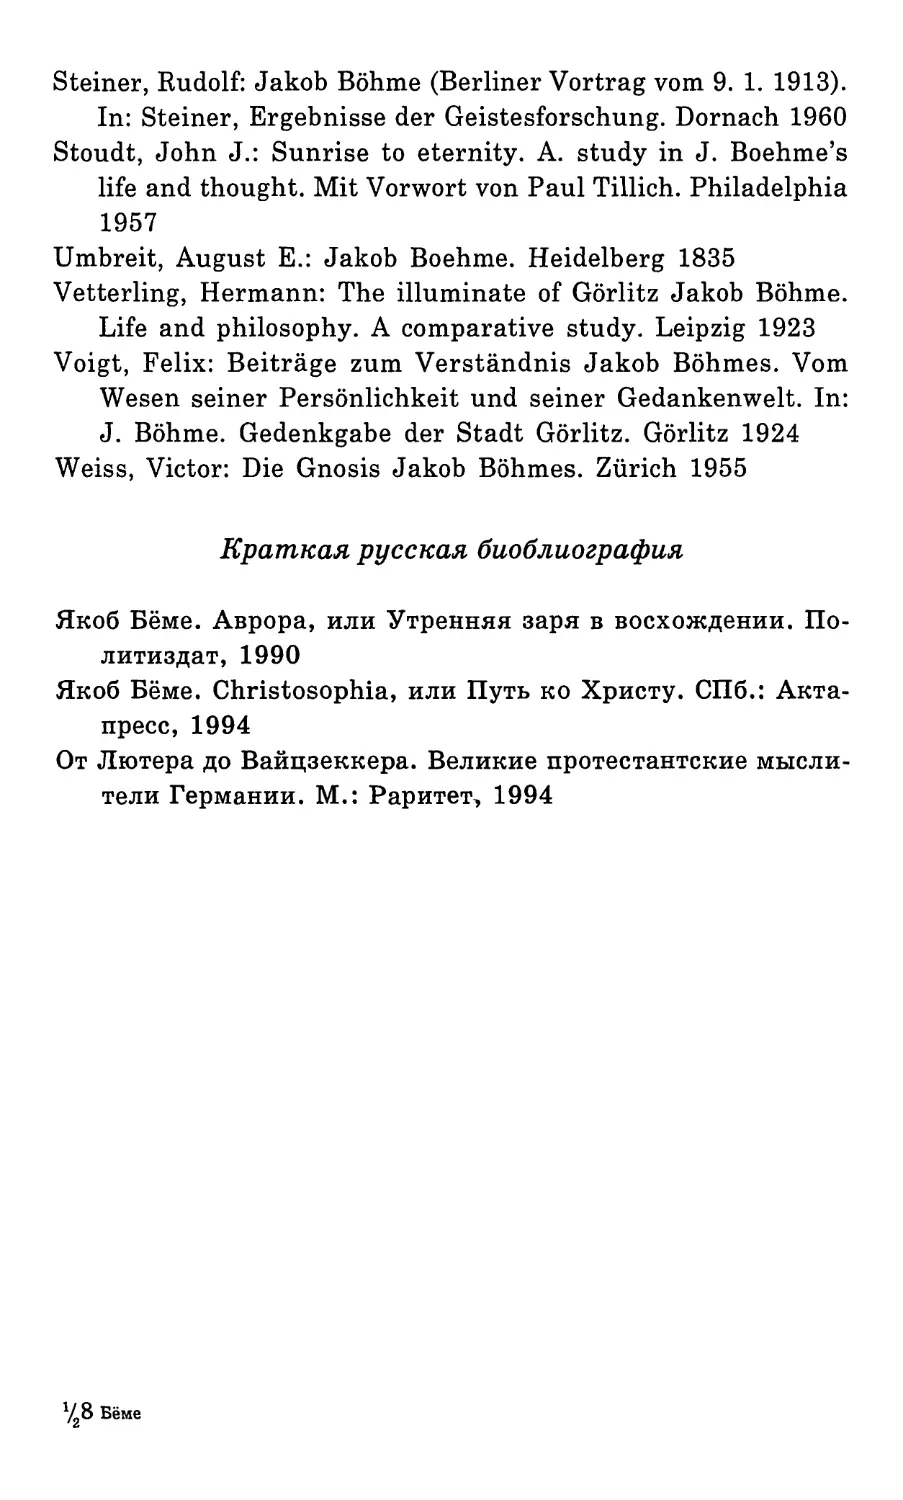 Краткая русская библиография